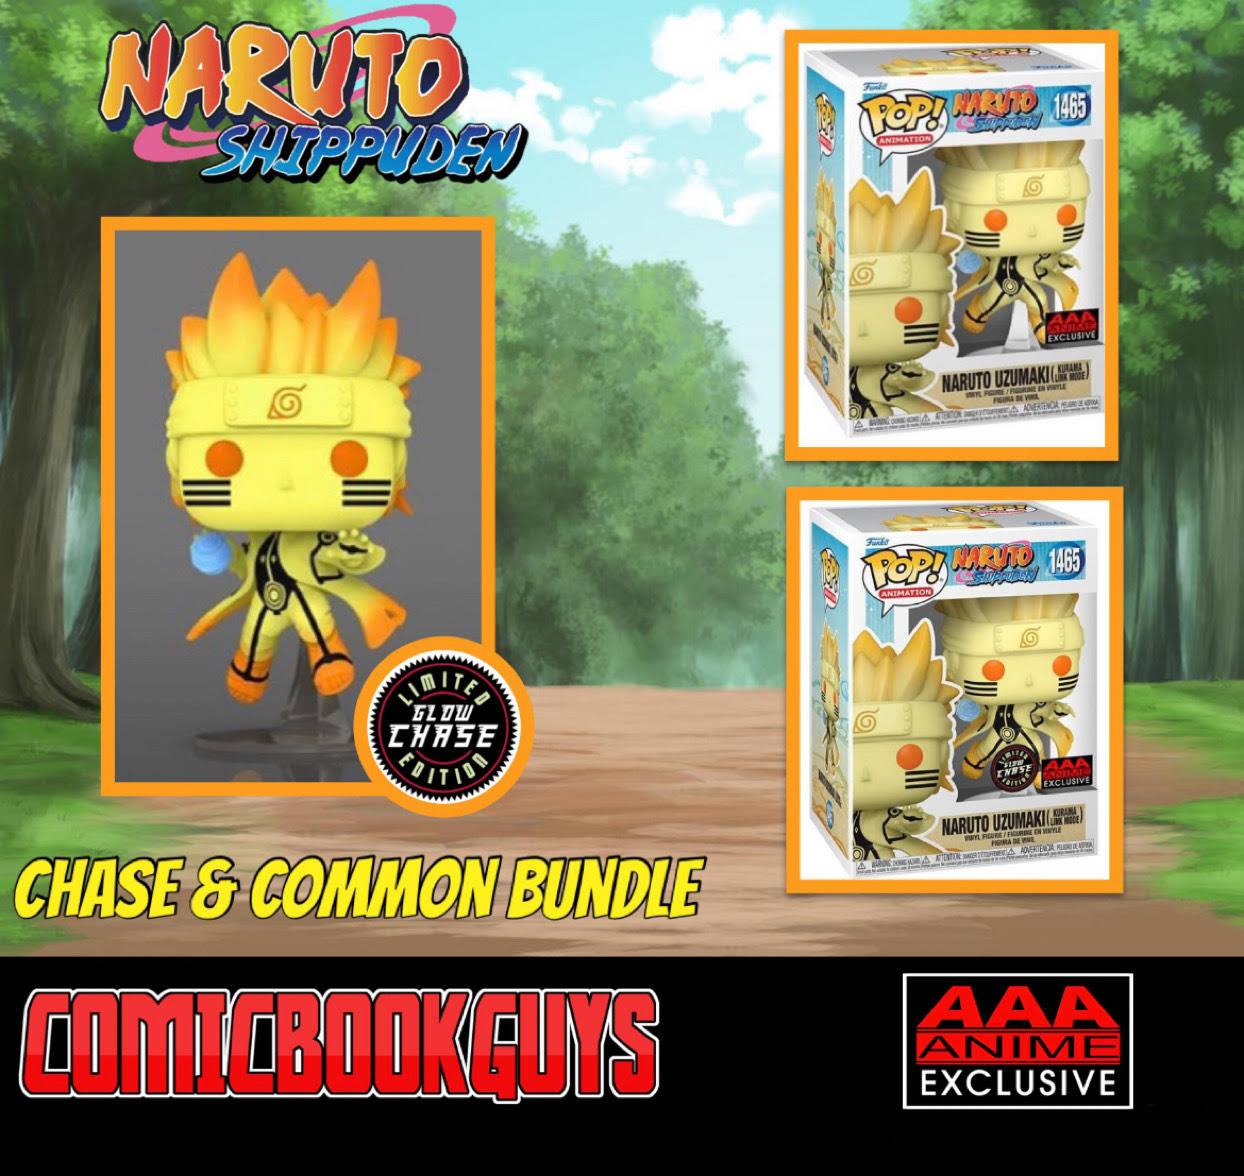 Naruto Uzumaki (Kurama Link Mode) Gameplay Video! Get Naruto